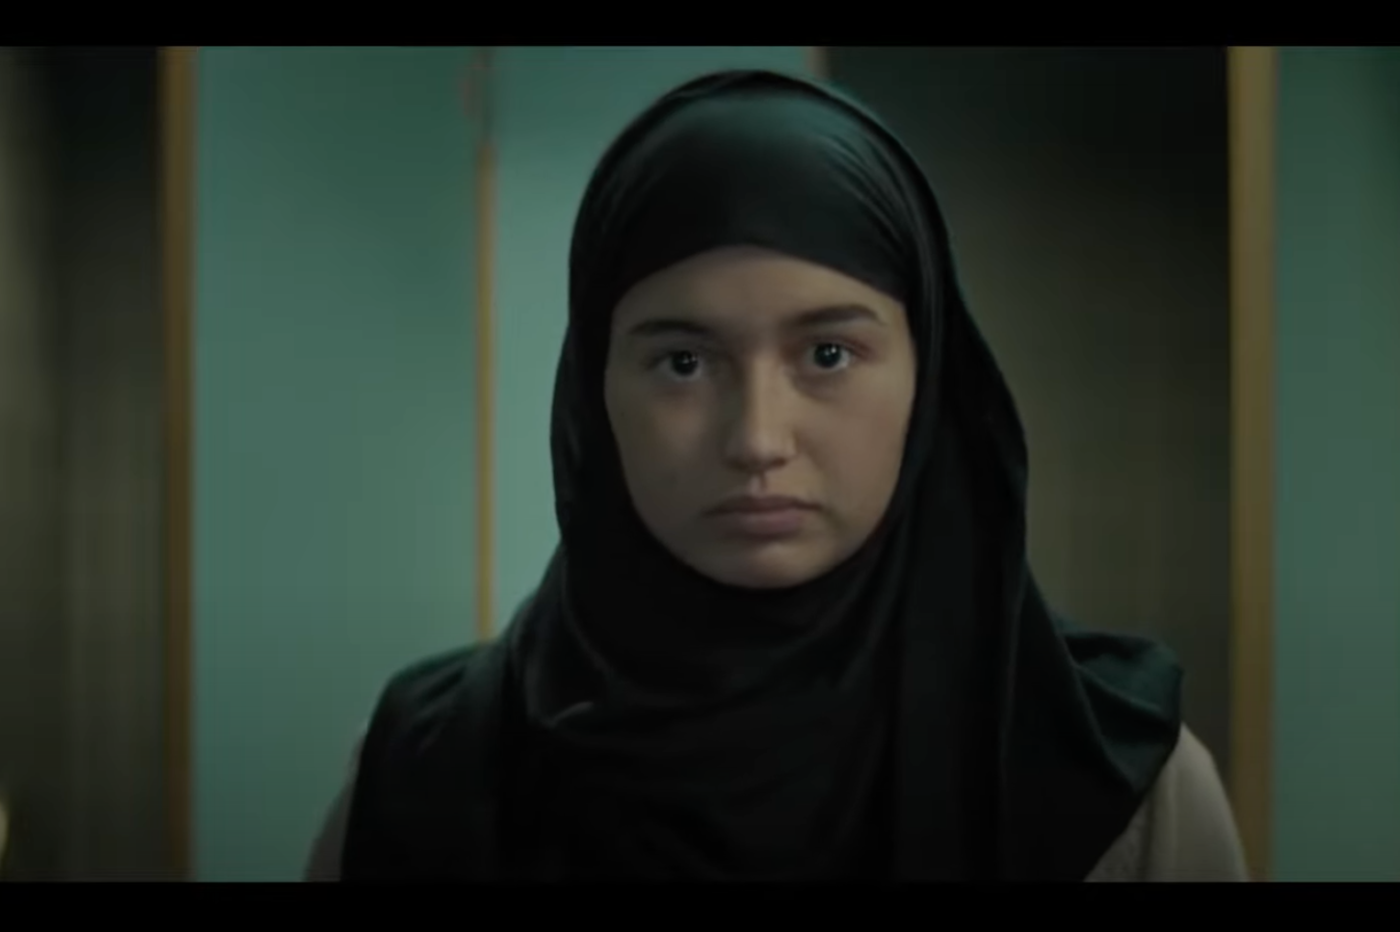 Nawelle Evad, l’actrice française – née de mère algérienne – joue l’adolescente iranienne héroïne du court-métrage (capture d’écran)